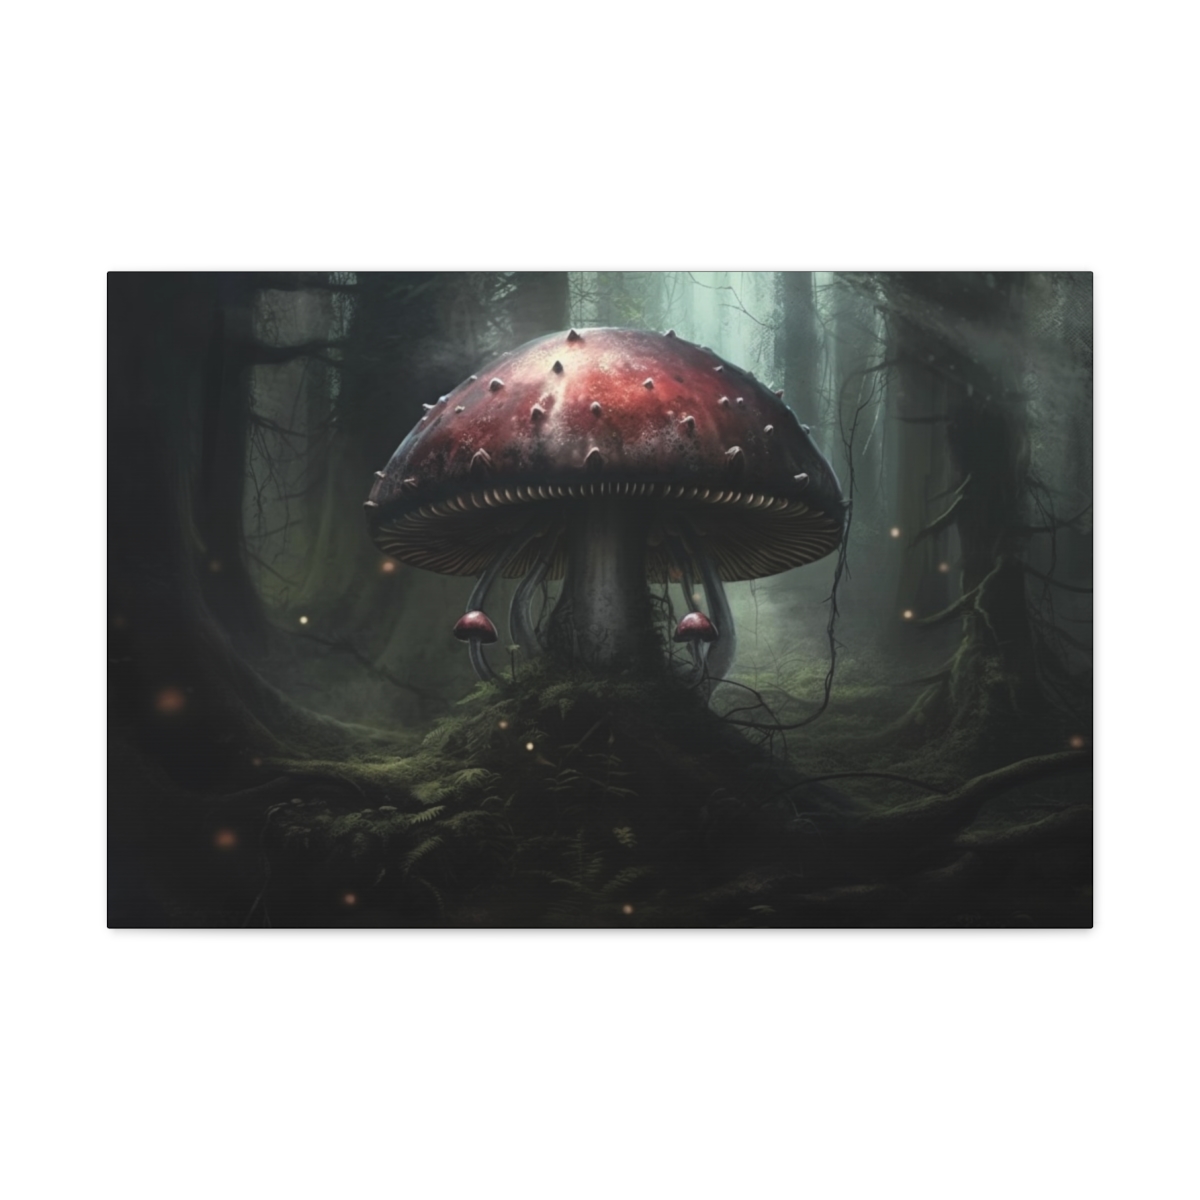 Mushroom Art Canvas Print: Fungi Of Pride